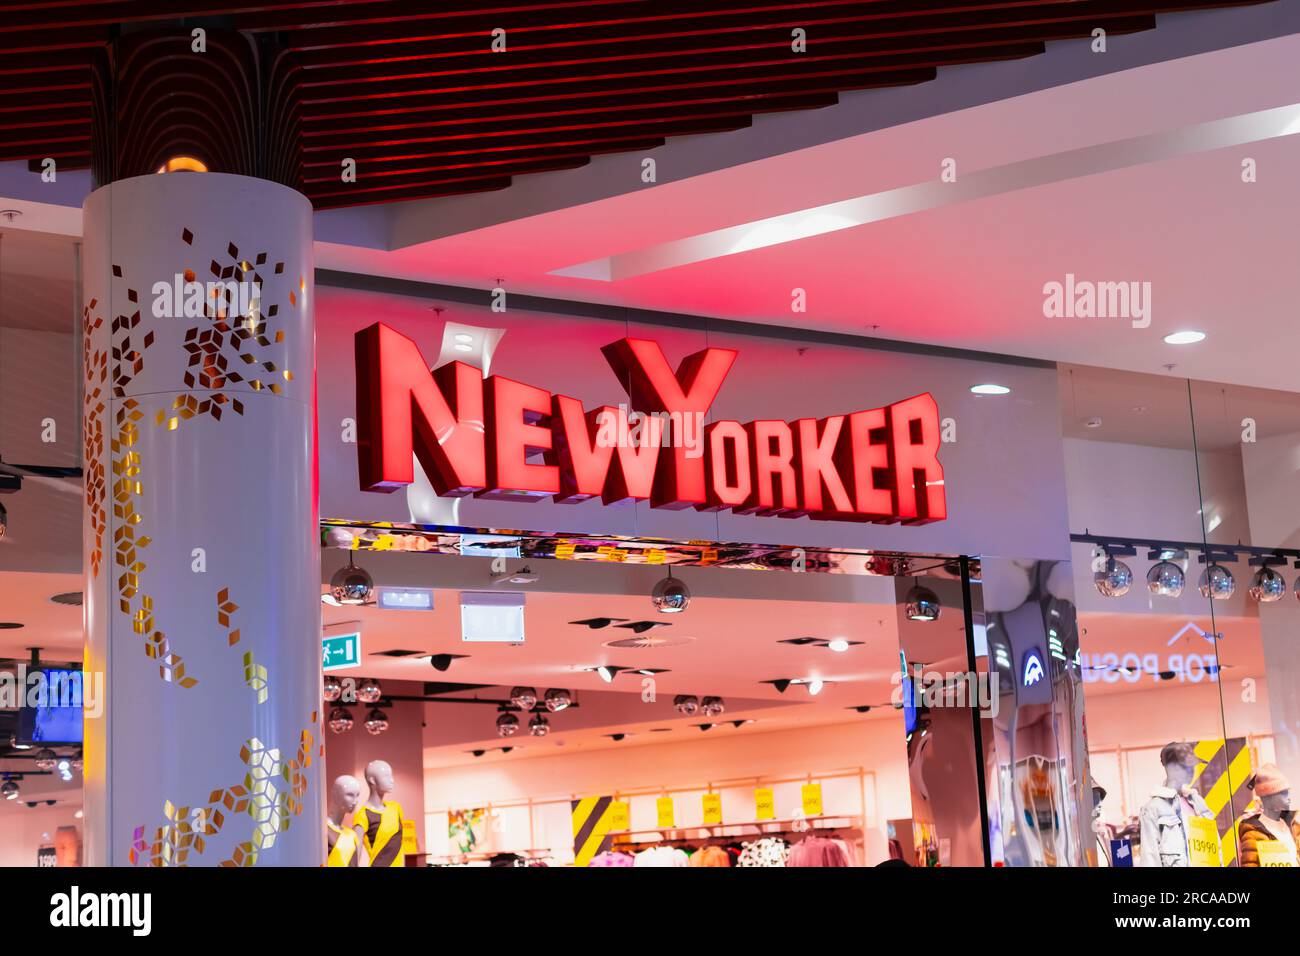 New Yorker - Designerlabel, Neonschild aus nächster Nähe, Eingang zum NewYorker Store im Einkaufszentrum. Pavlodar, Kasachstan - 01.30.2023 Stockfoto